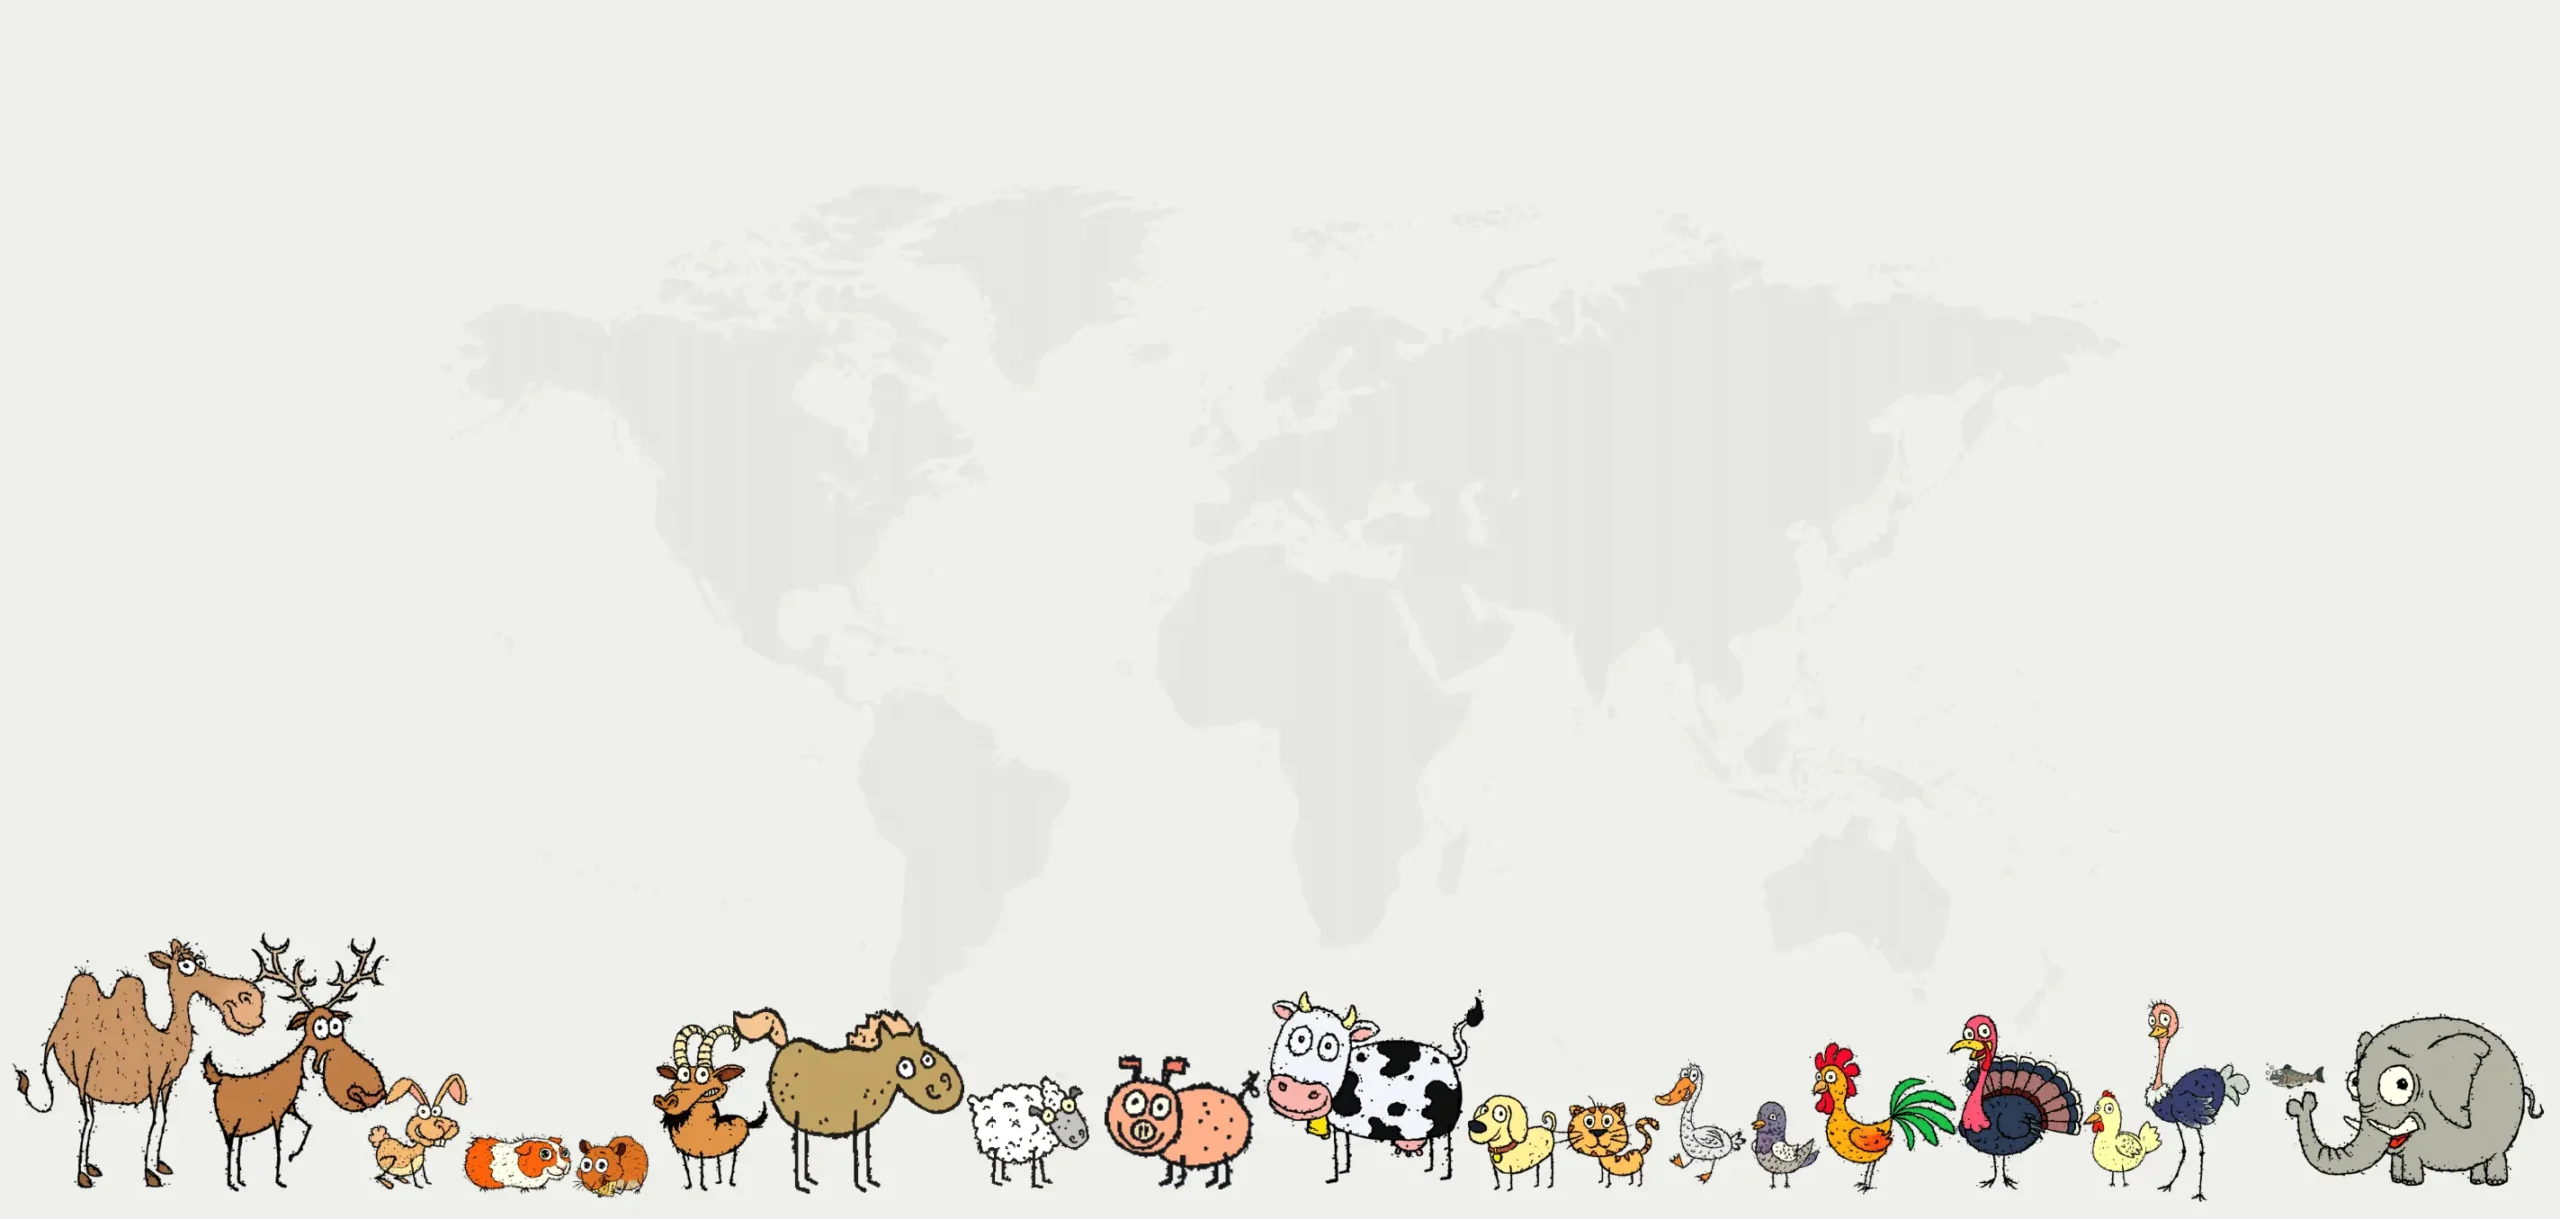 cartoon animals, world map in background